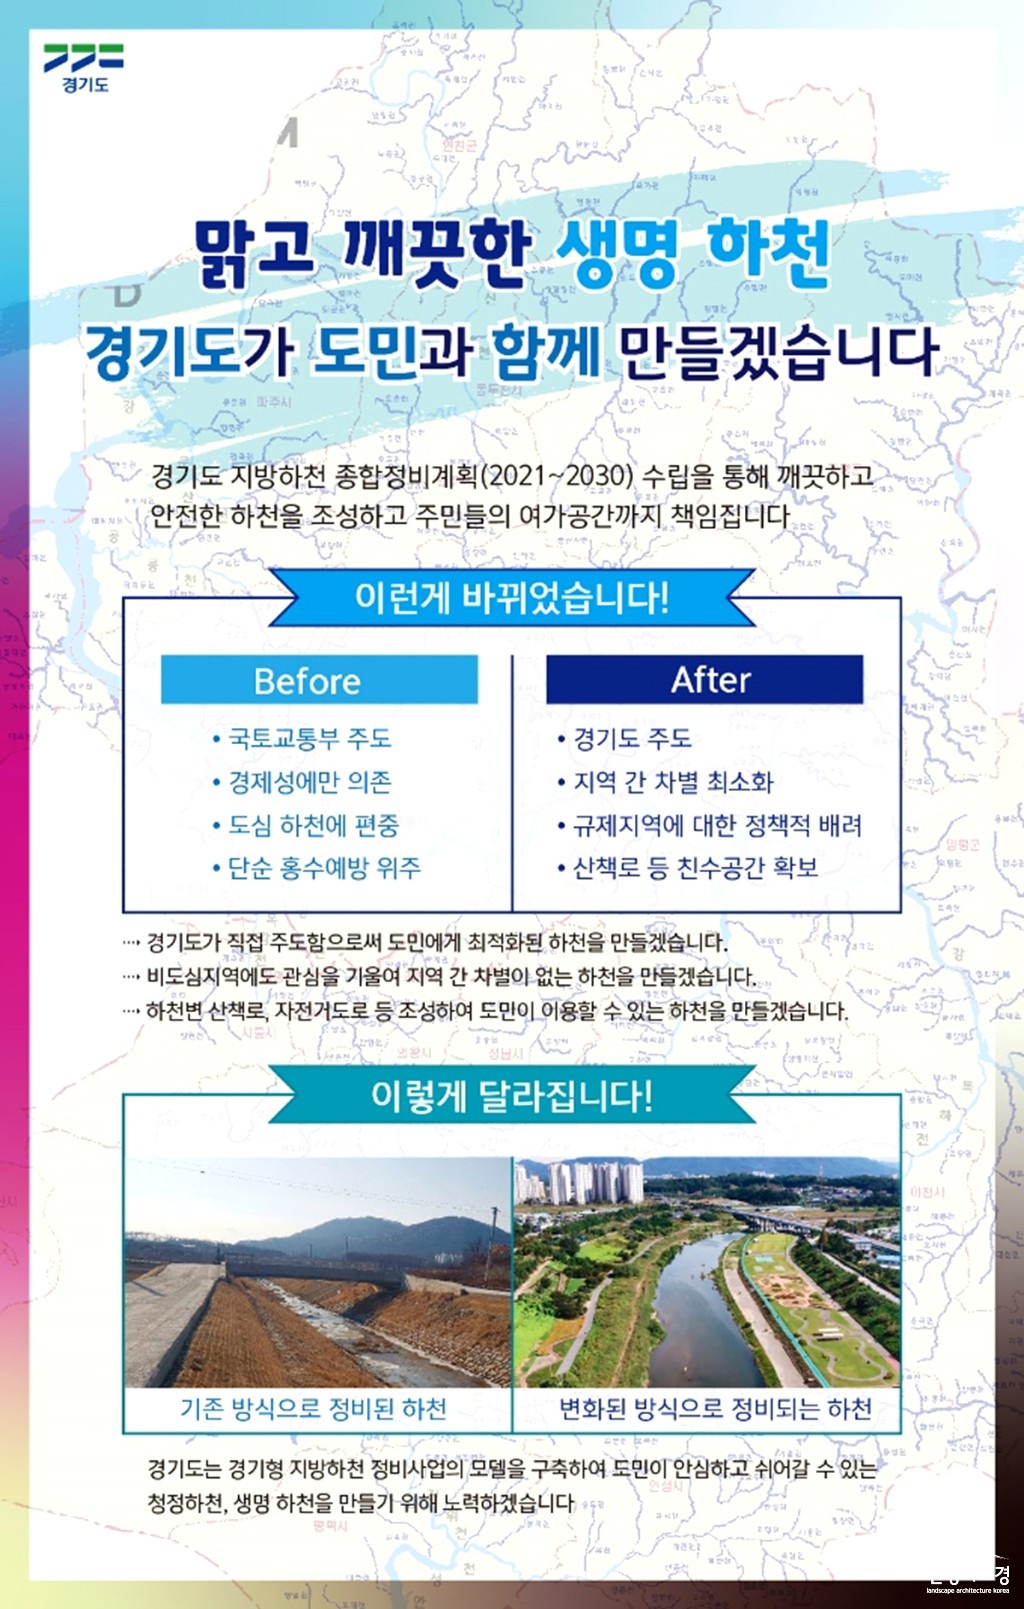 경기도 지방하천 종합정비계획 인포그래픽 보도.jpg